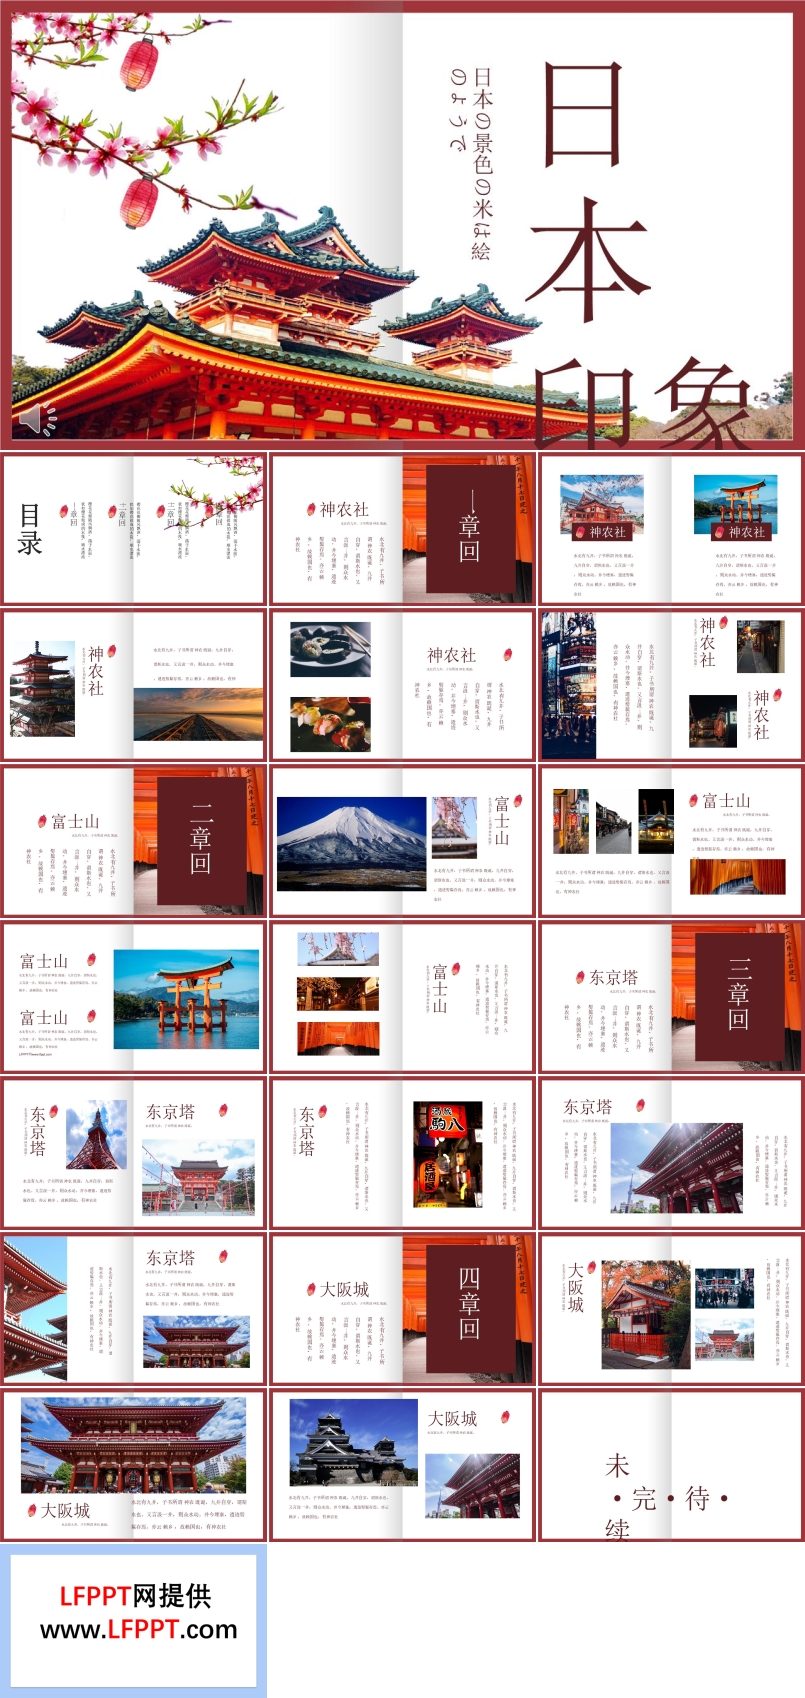 画册风格日本旅游旅行日记PPT模板